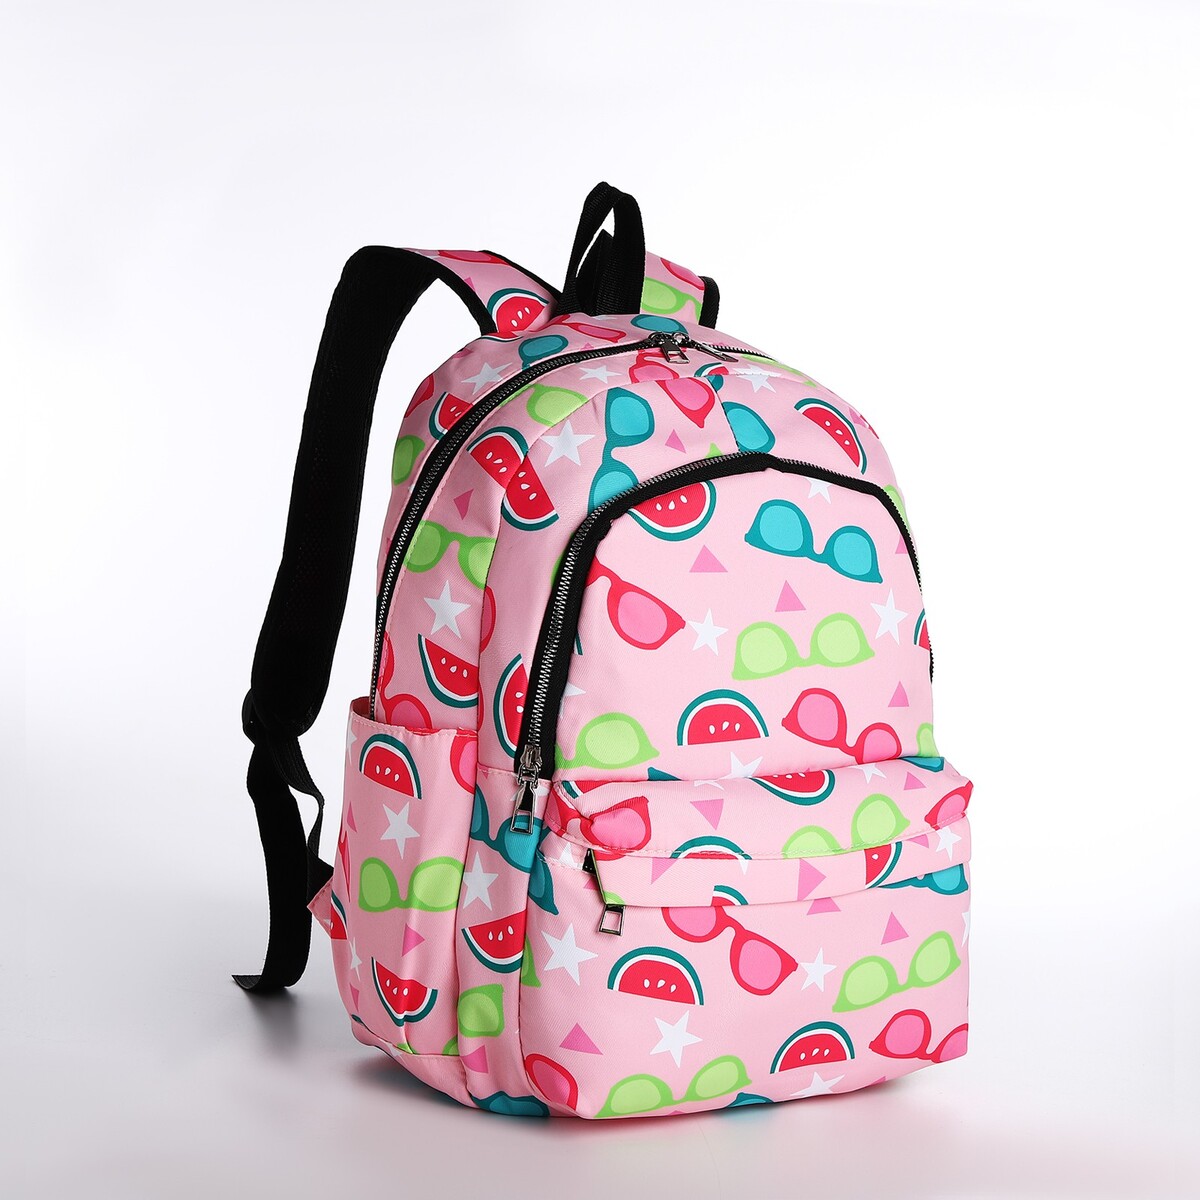 Рюкзак молодежный из текстиля 2 отдела на молнии, 3 кармана, цвет розовый рюкзак молодежный из текстиля 3 кармана белый розовый